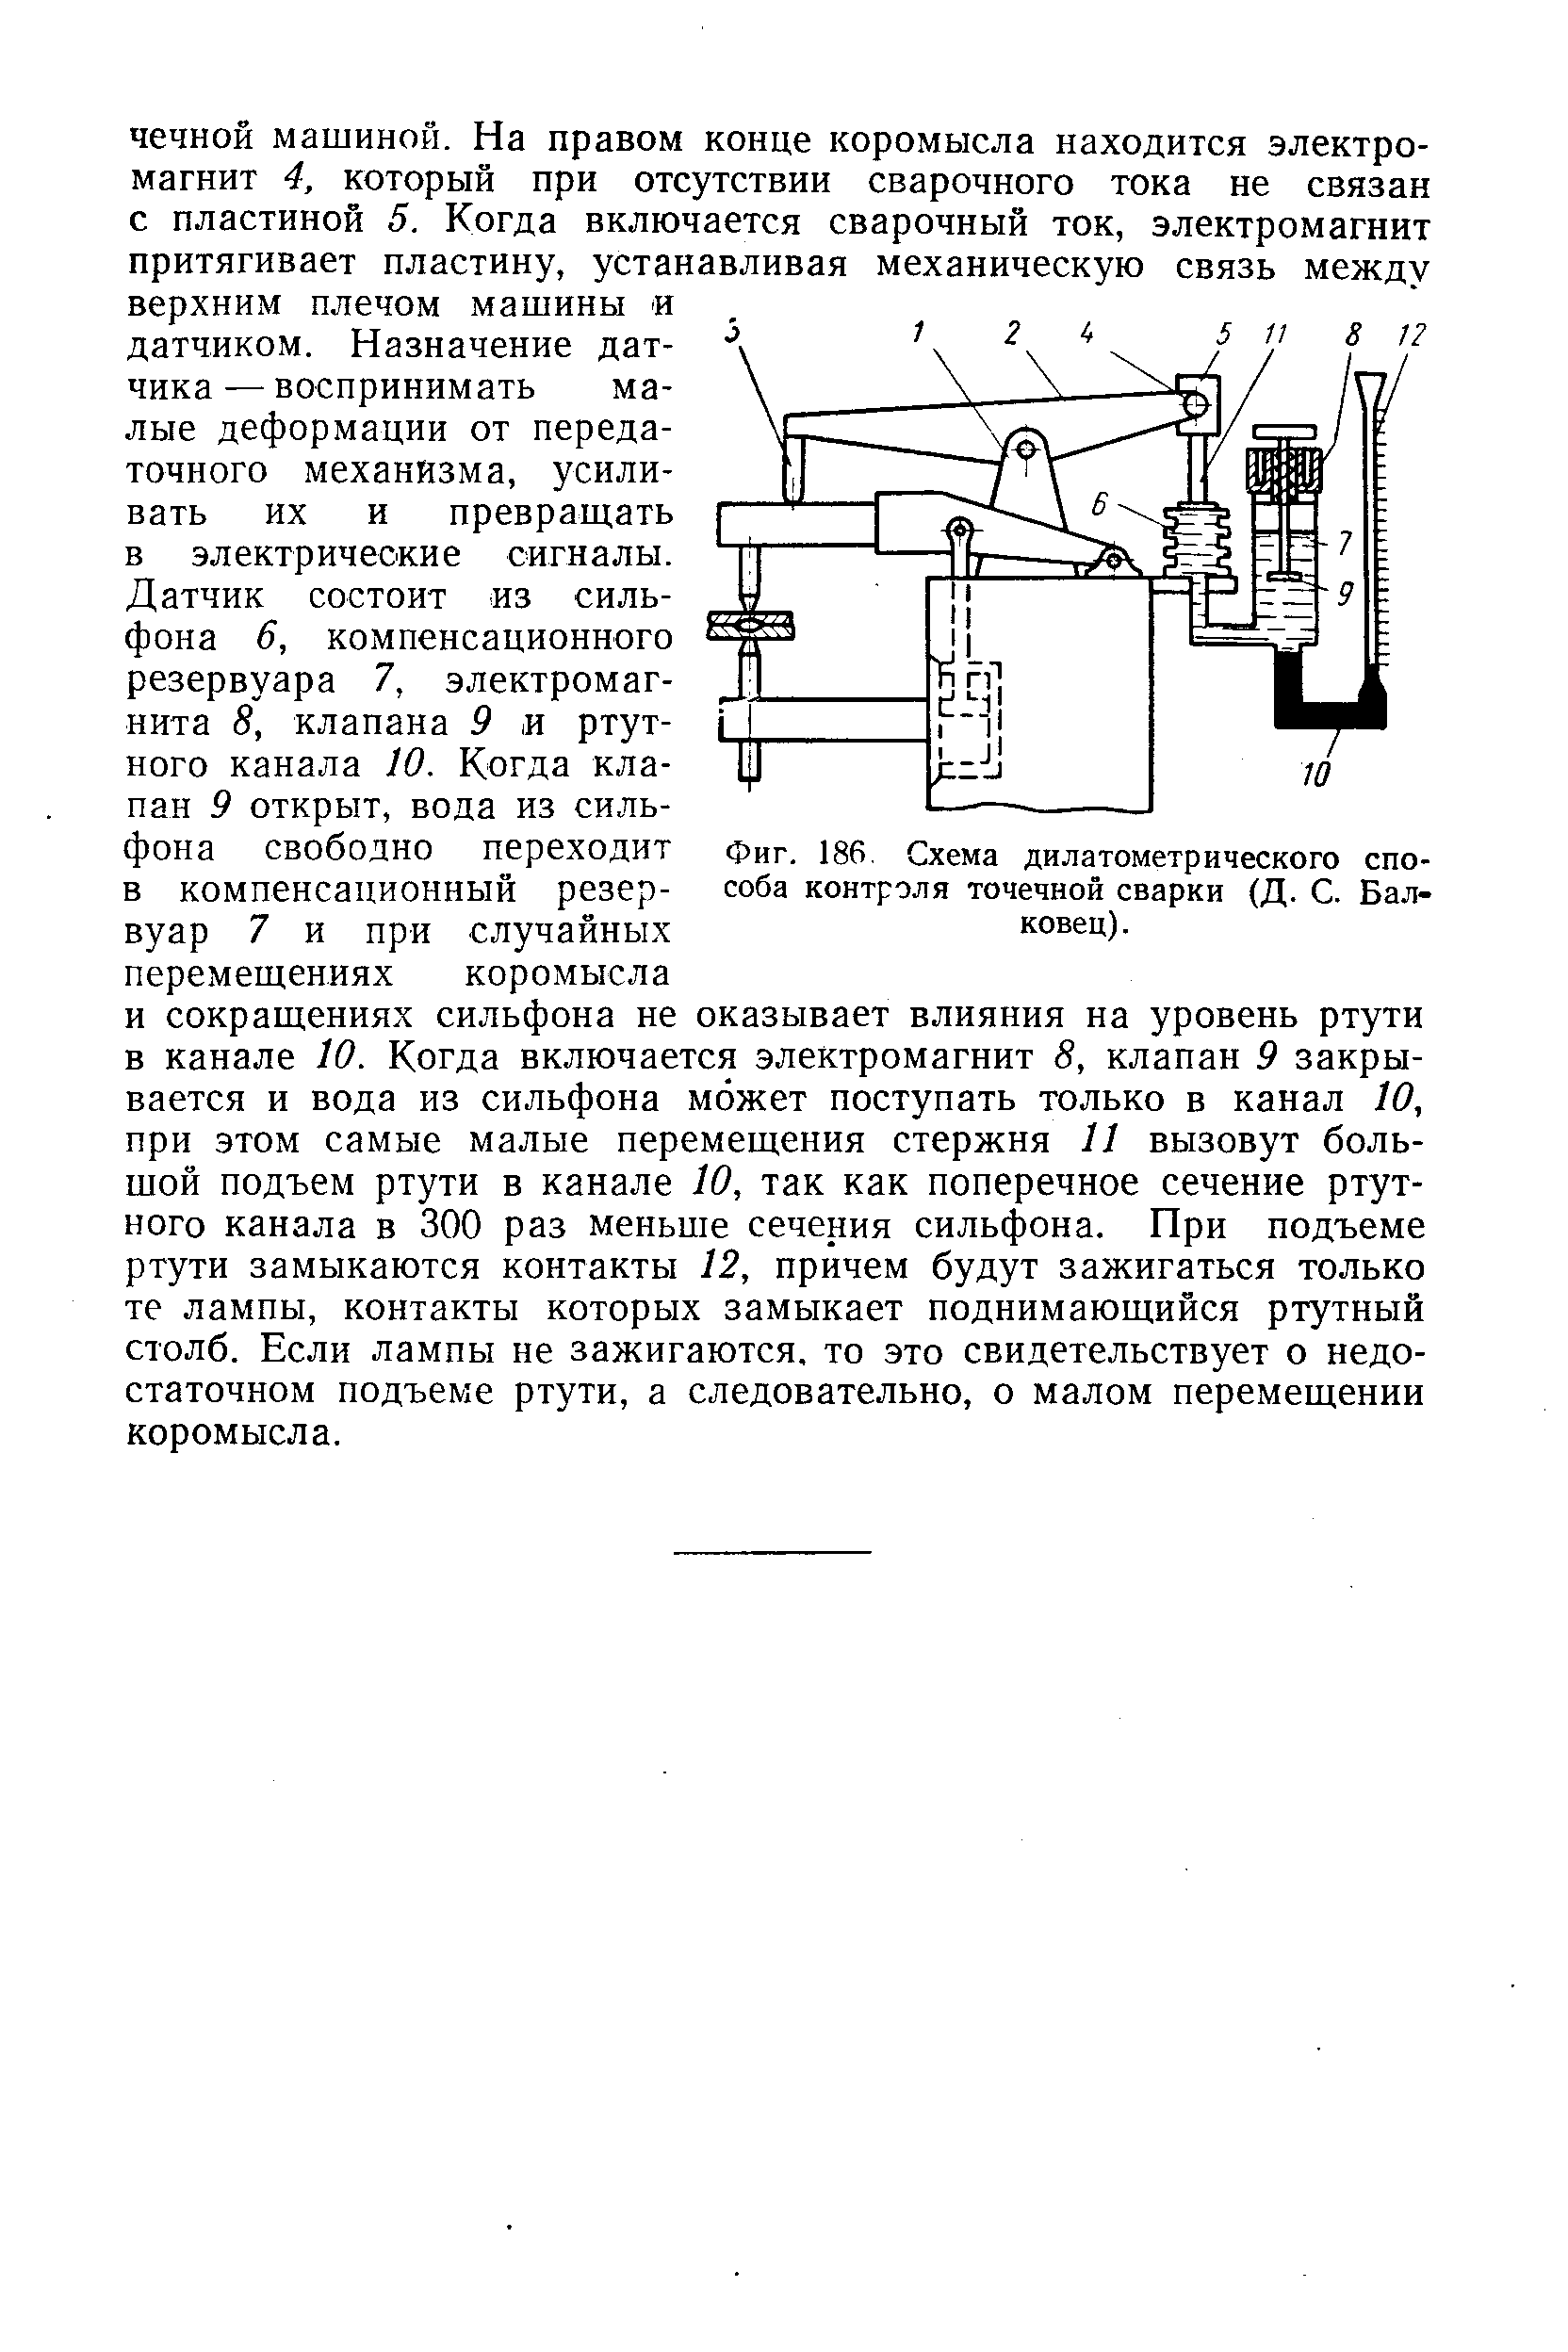 Фиг. 186 Схема дилатометрического способа контроля точечной сварки (Д. С. Бал-ковец).
